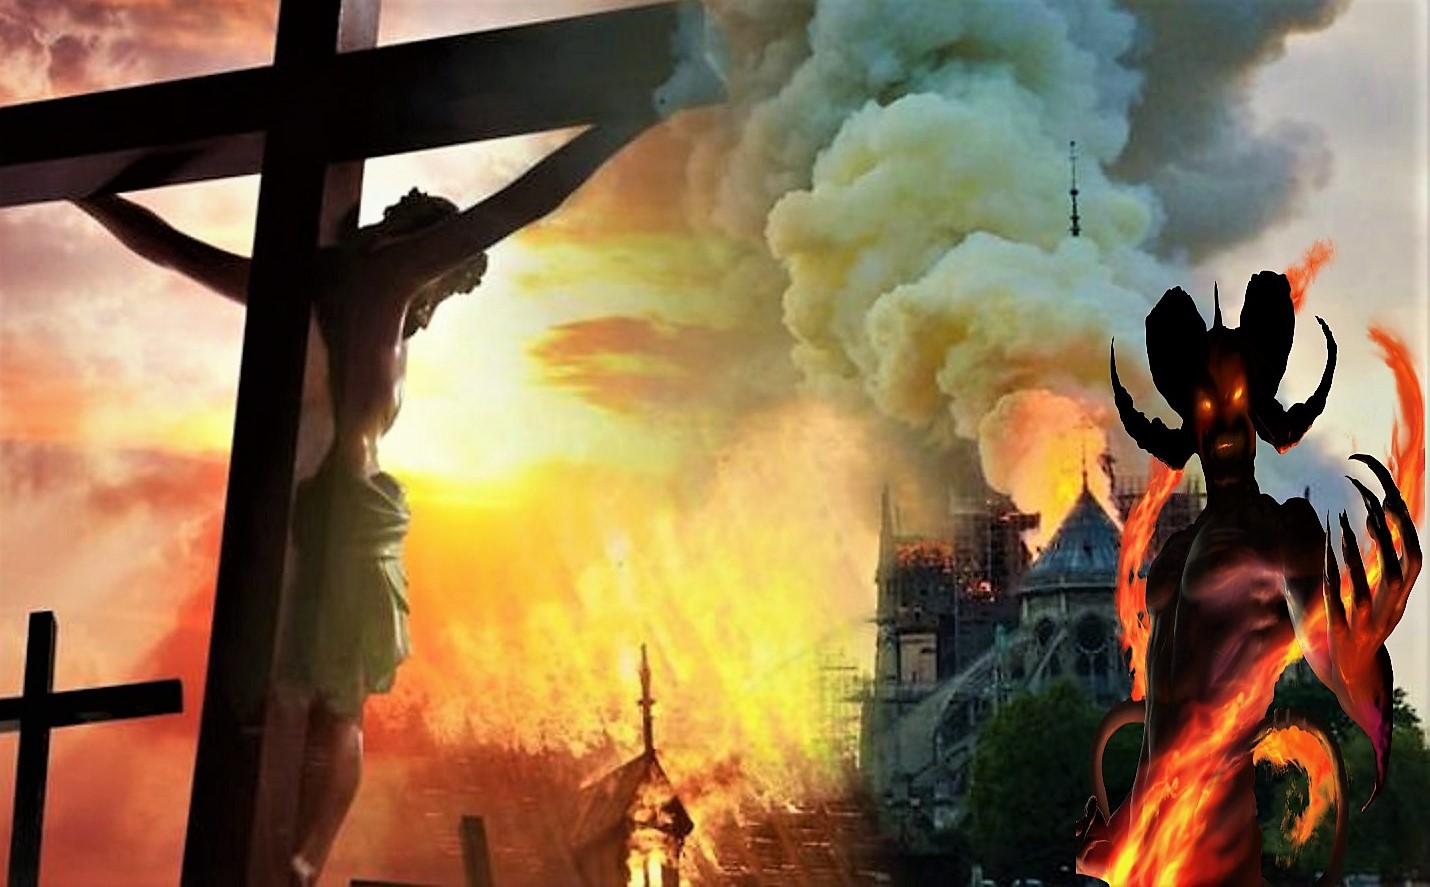 El simbolismo oculto tras los incendios de Notre-Dame y la mezquita Al-Aqsa